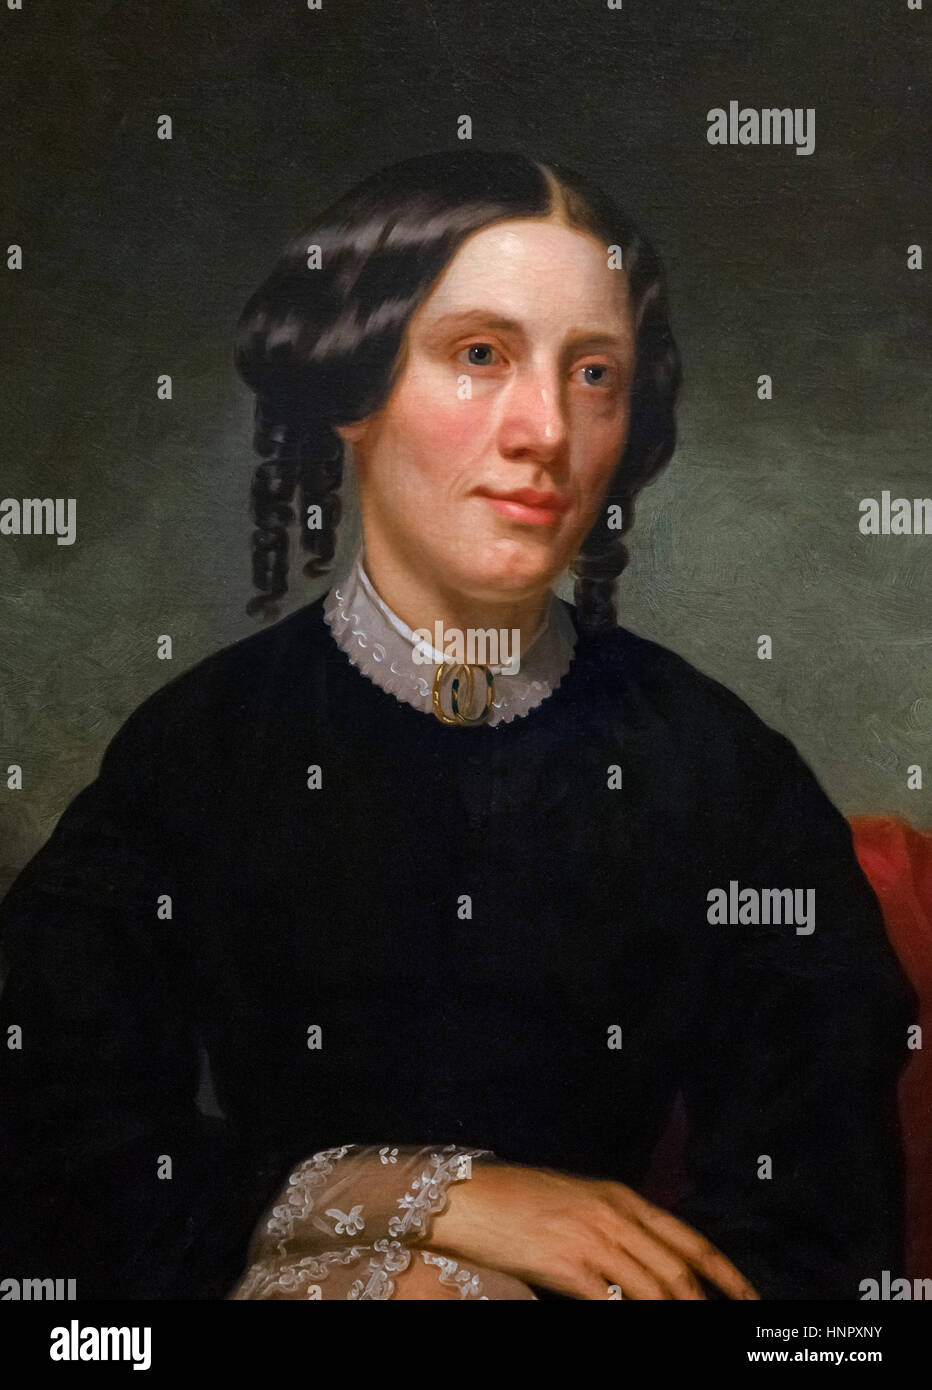 Harriet Beecher Stowe (1811-1896), portrait par Alanson Fisher, huile sur toile, 1853. Harriet Beecher Stowe est un écrivain américain et abolitionniste, célèbre pour son roman 'Uncle Tom's Cabin" publié en 1852. Banque D'Images